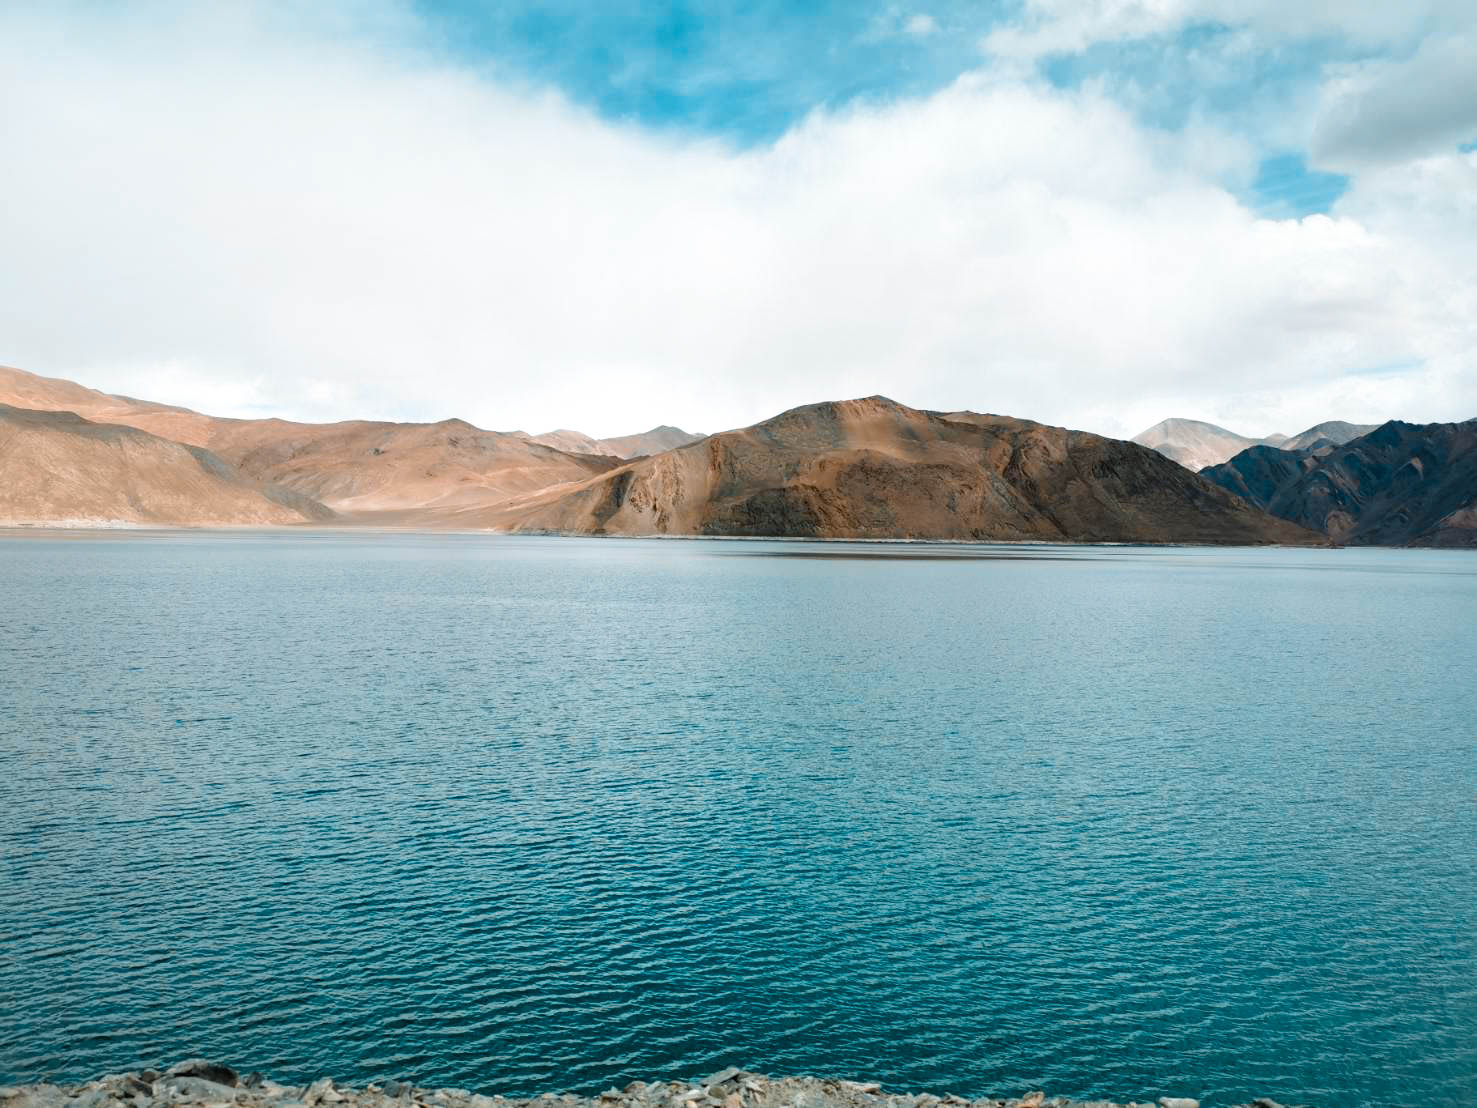 ทะเลสาบ pangong ทัวร์เลห์ ลาดักห์ เที่ยวเลห์ ลาดักห์ Leh Ladakh Tour leh ladakh